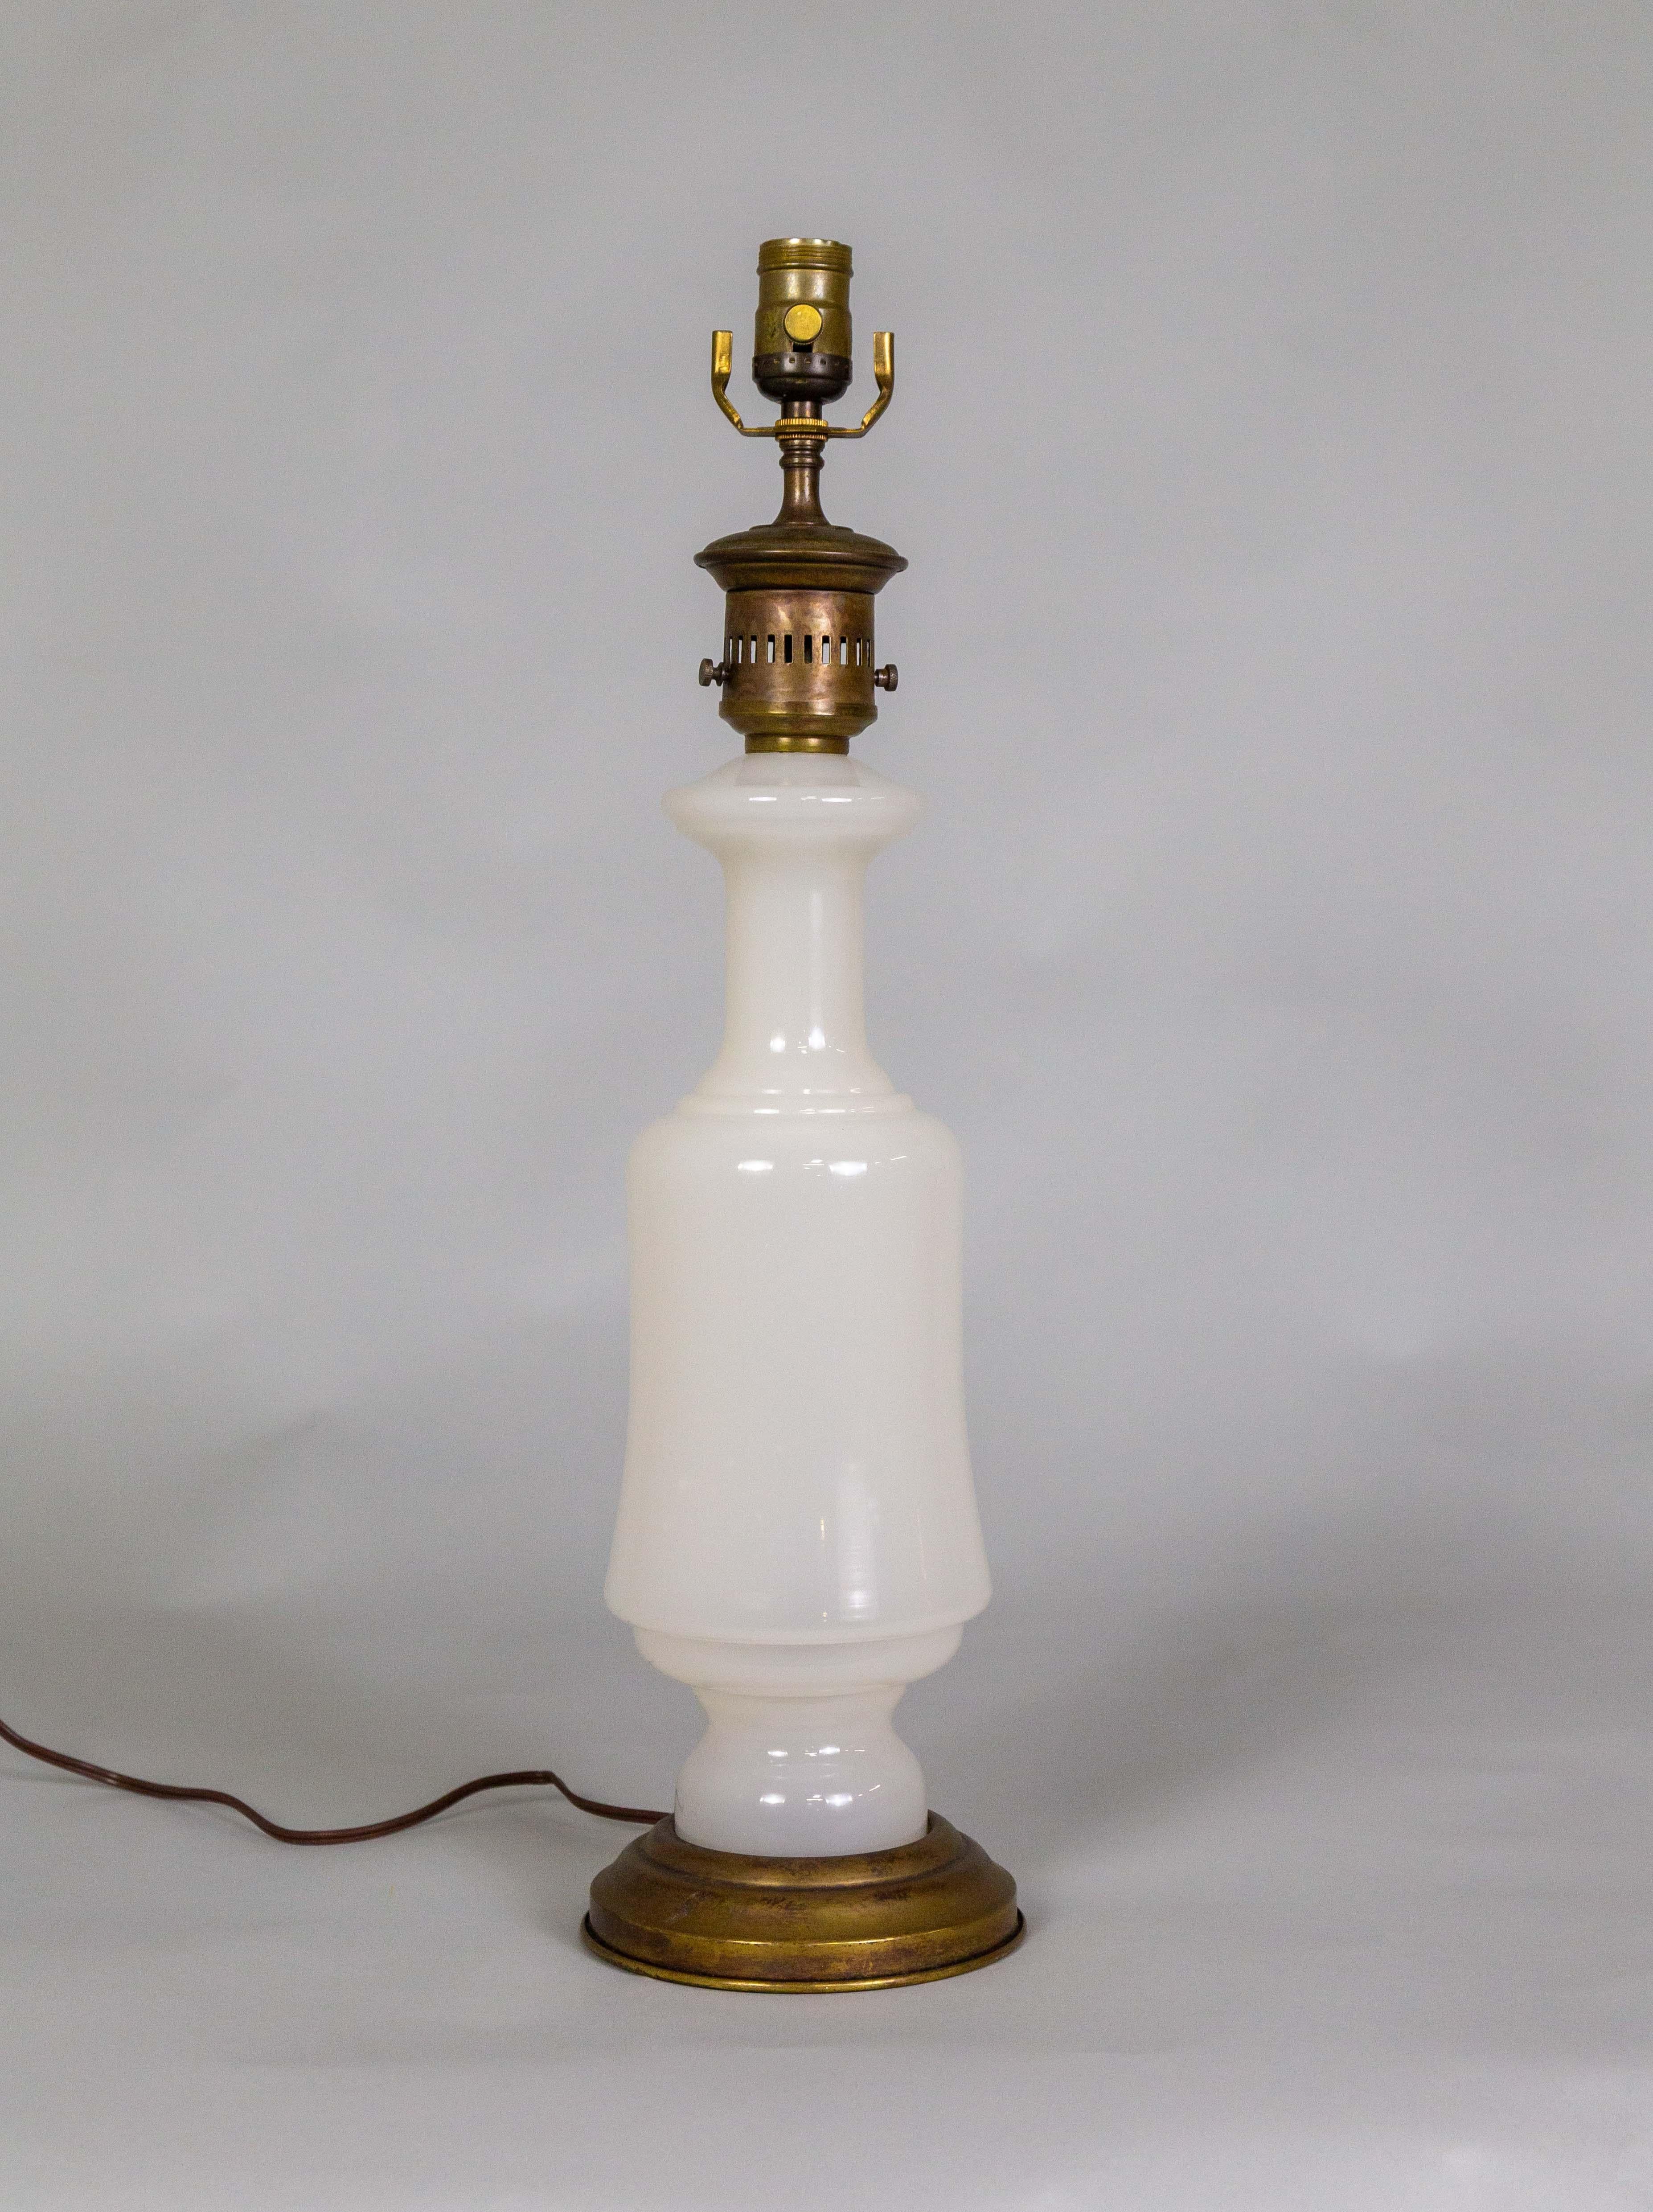 Eine schöne Lampe von Frederick Cooper aus der Mitte des 20. Jahrhunderts hat Kerosinlampenbeschläge an der Spitze eines elegant geformten milchigen Opalglases. Der Messingfuß passt zum oberen Teil des Halses. Das Glas wird in Frankreich